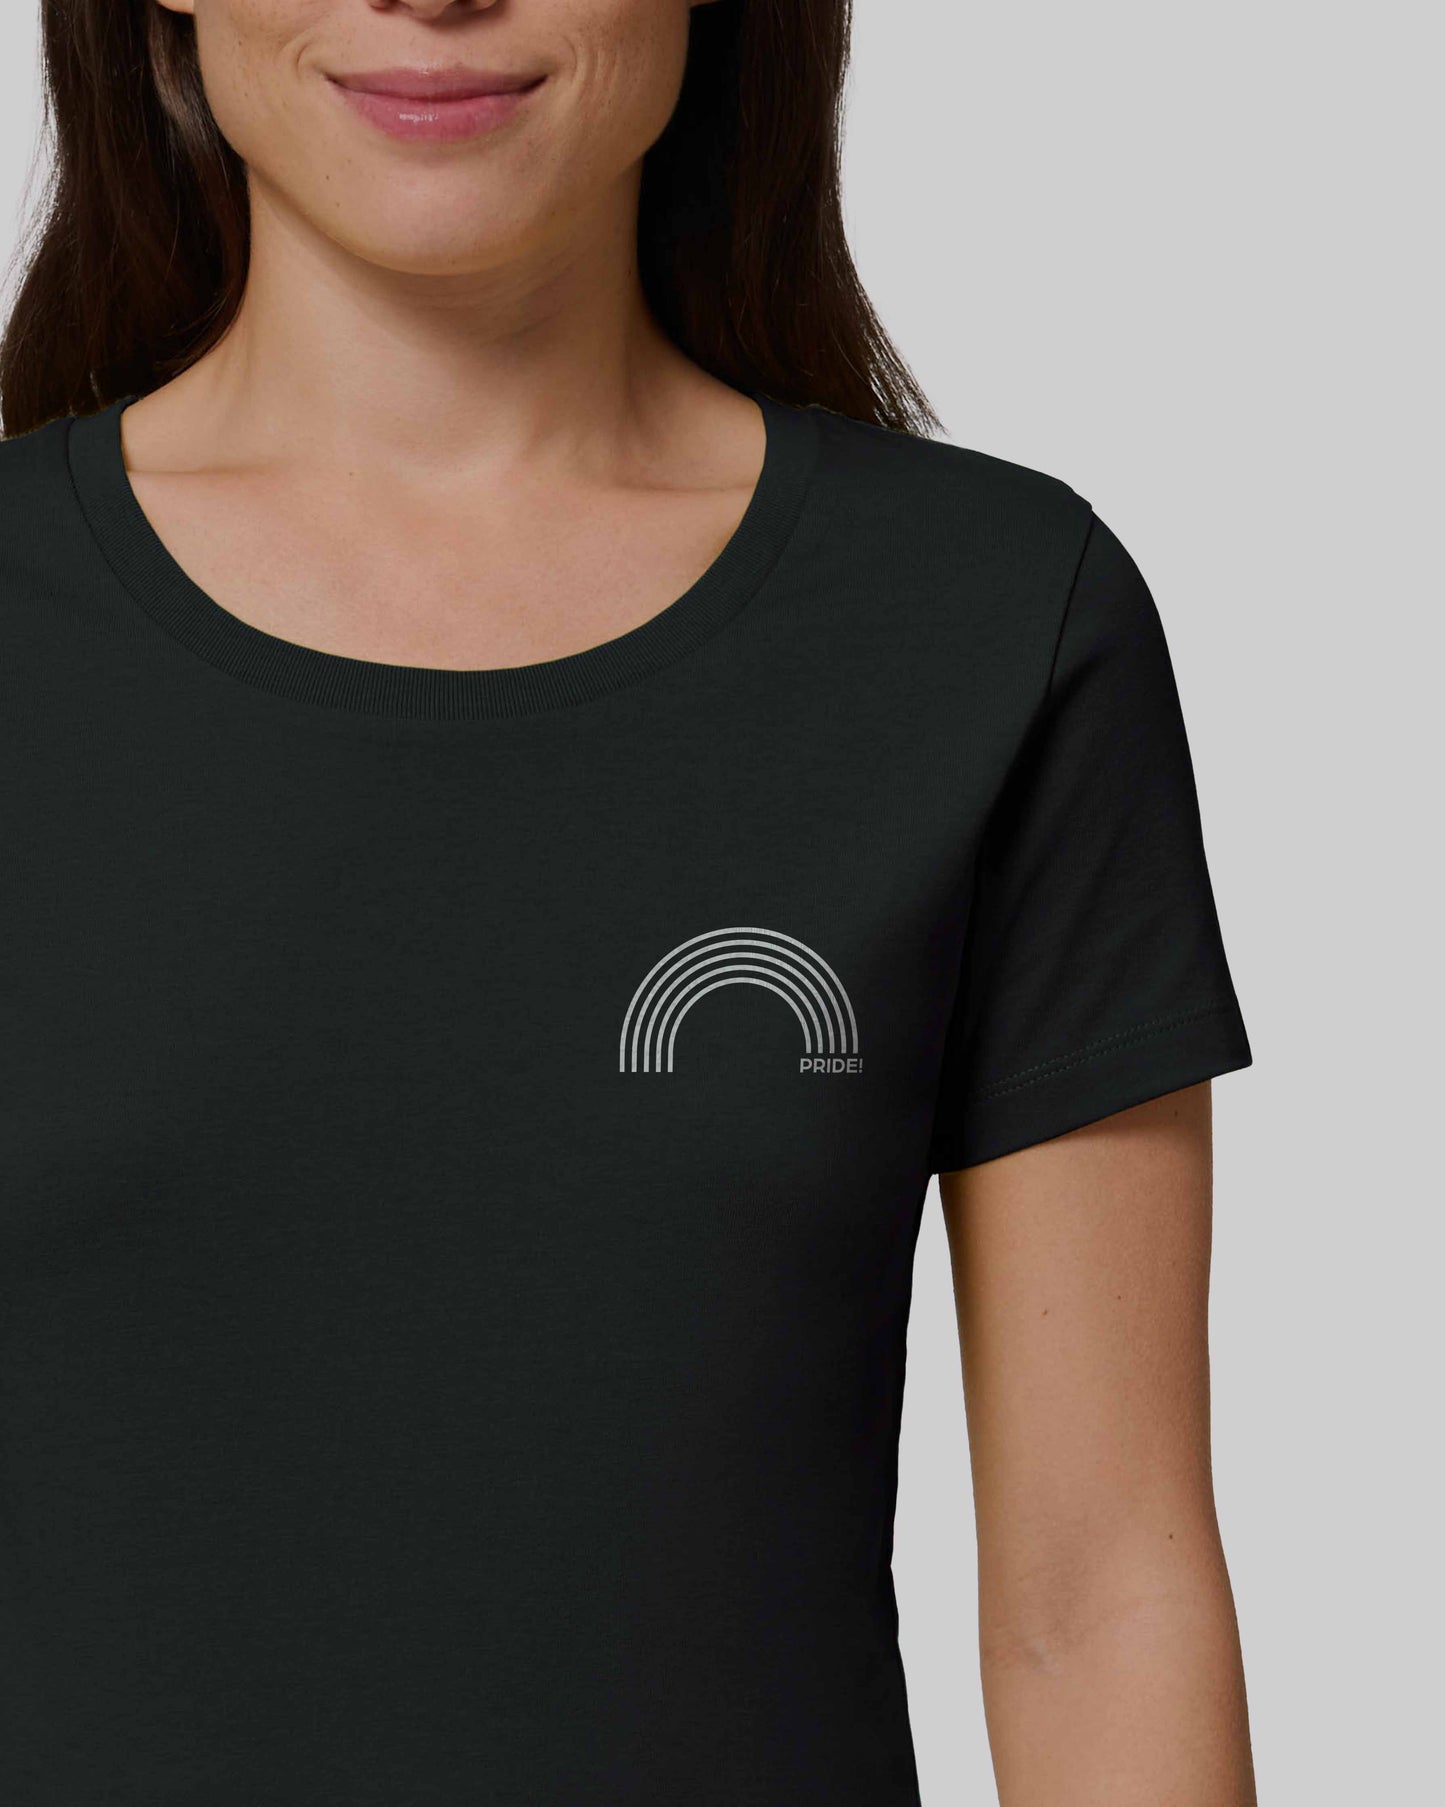 EINHORST® Organic Shirt tailliert in "Schwarz" mit dem Motiv "pride Regenbogen" in der Kombination weißer Regenbogen mit weißer Schrift, Bild von weiblicher Person mit Shirt